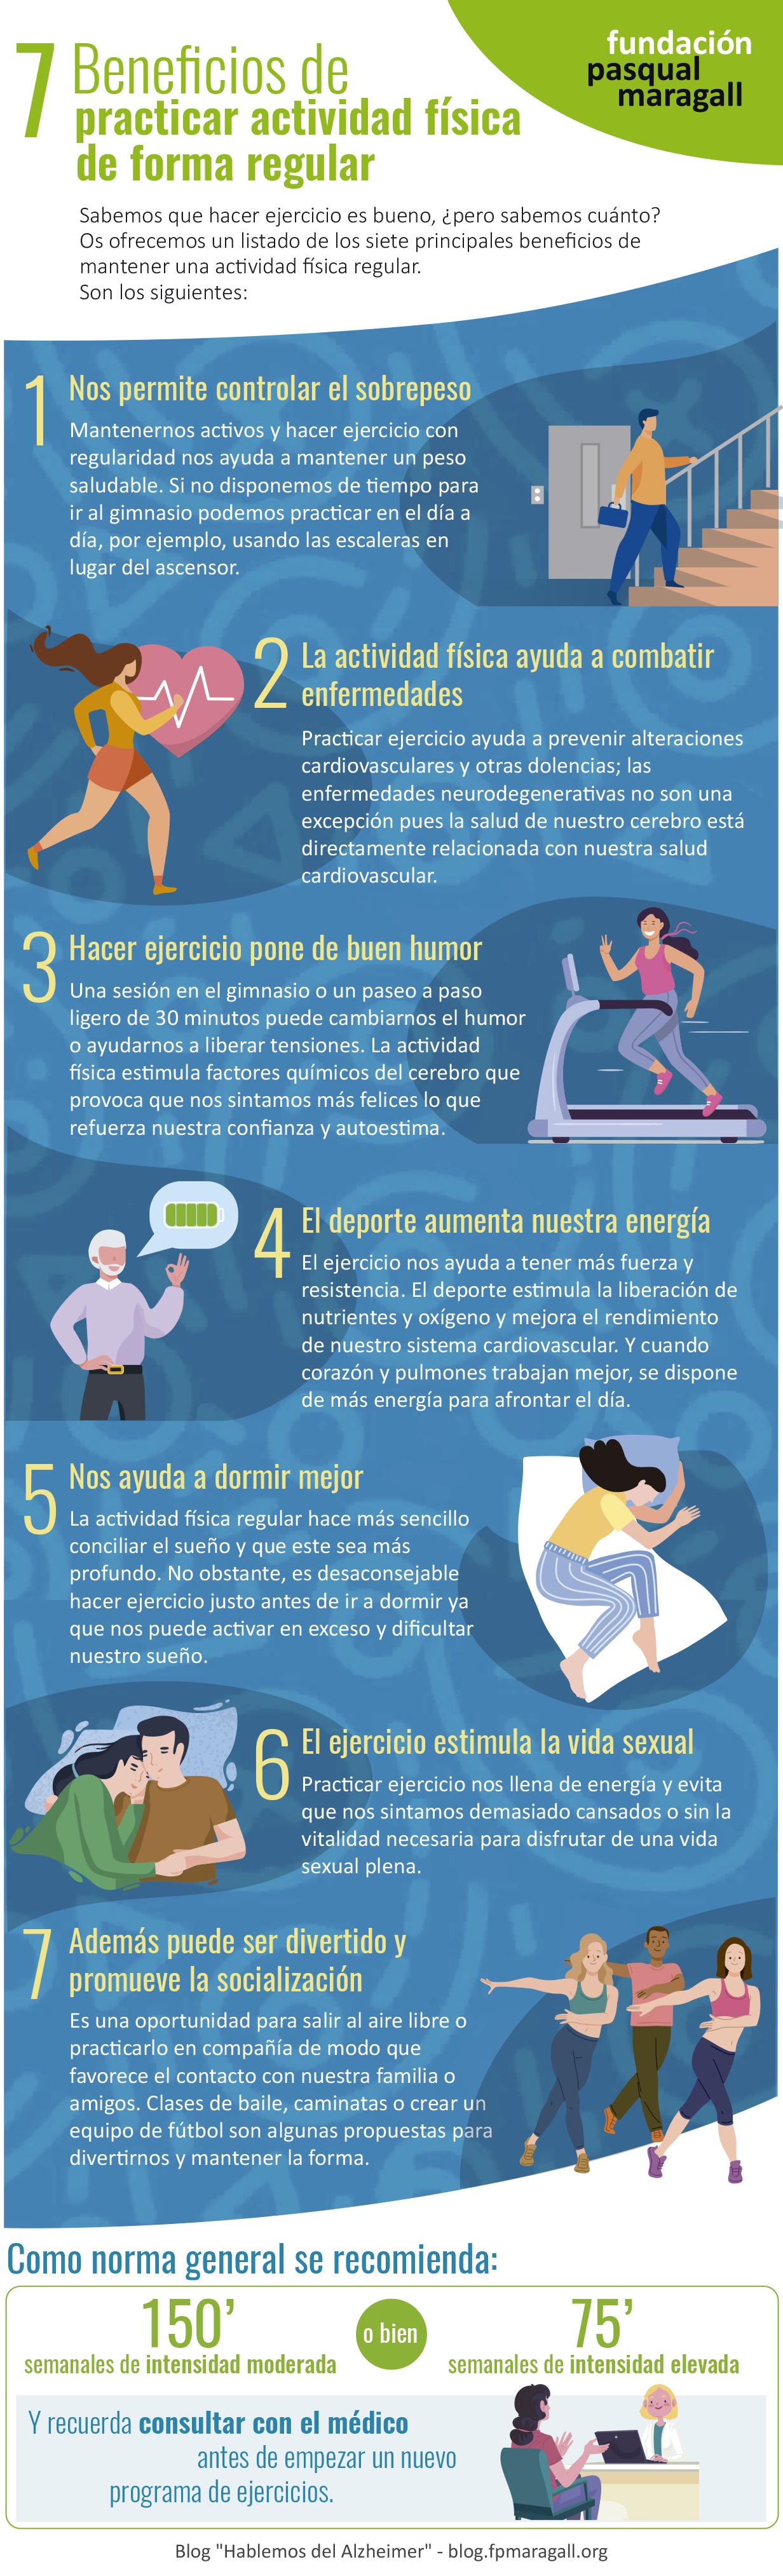 Cómo hacer ejercicio físico puede ayudar a mejorar la memoria, Salud y  bienestar